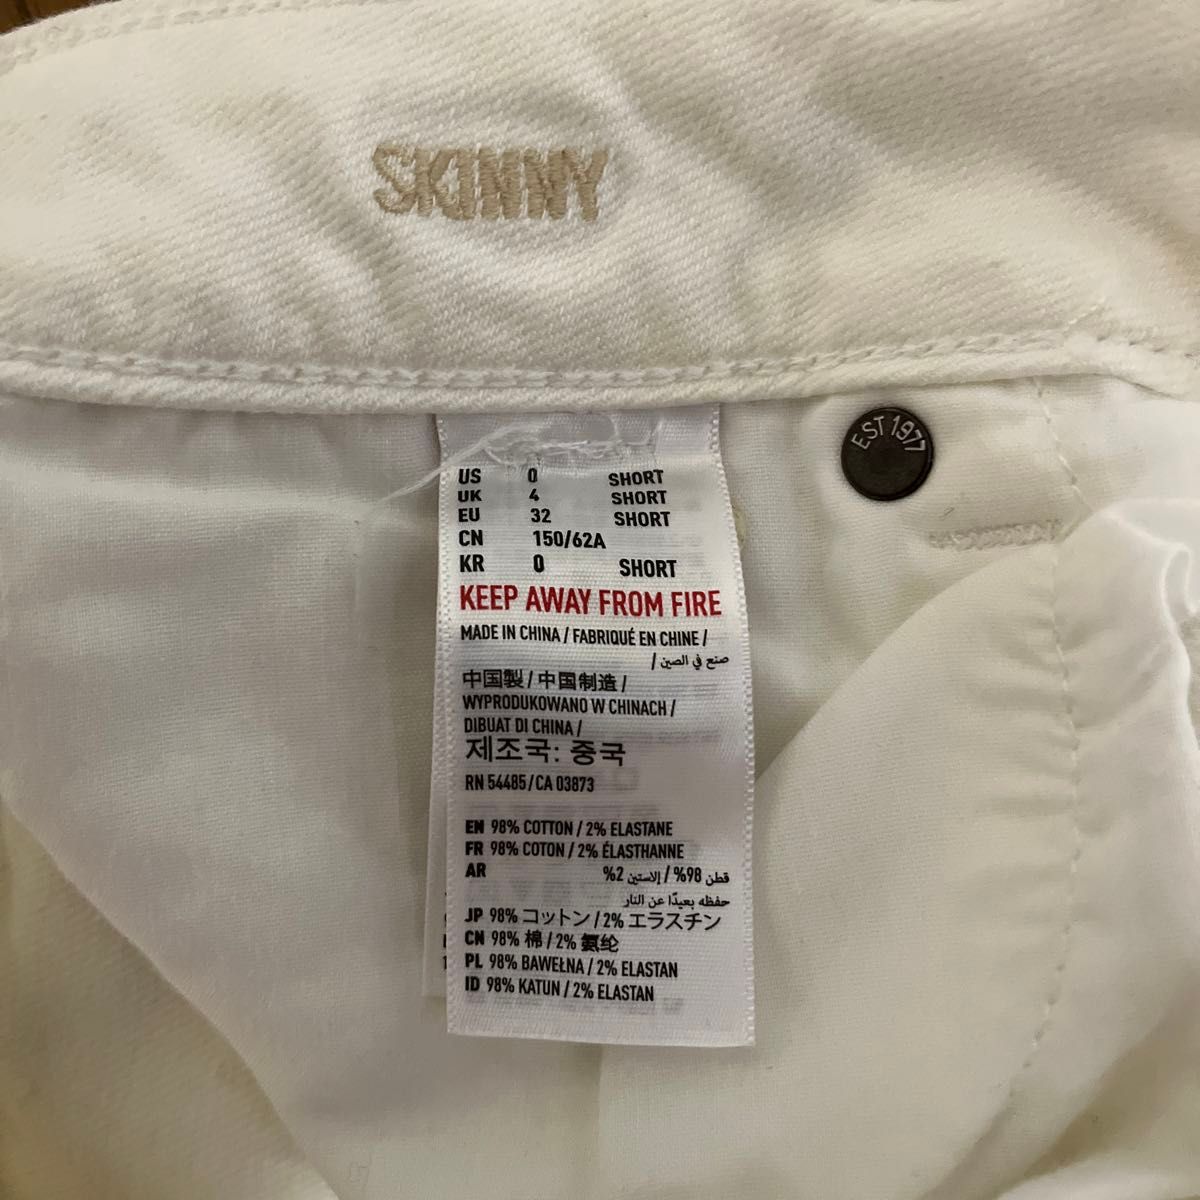 ダメージジーンズ ストレッチ スキニー パンツ ホワイトキッズ用ですが小型な人なら着れそうです。画像でサイズご確認下さい